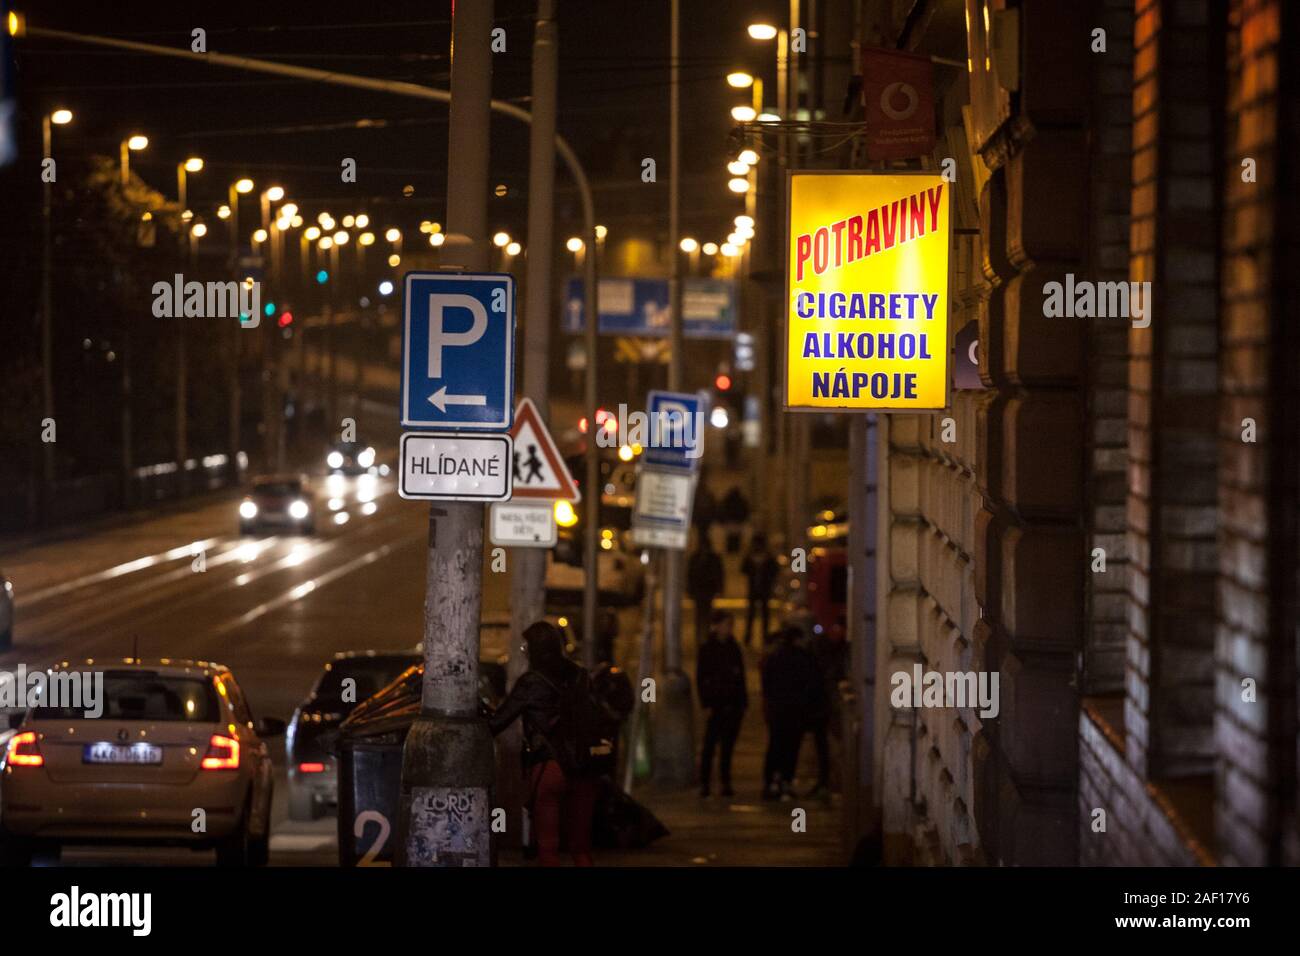 PRAGUE, Repubblica Ceca - 3 Novembre 2019: Minimarket (potraviny) vendita di alcolici, bevande, le sigarette e i prodotti del tabacco di notte. La Repubblica ceca ha Foto Stock